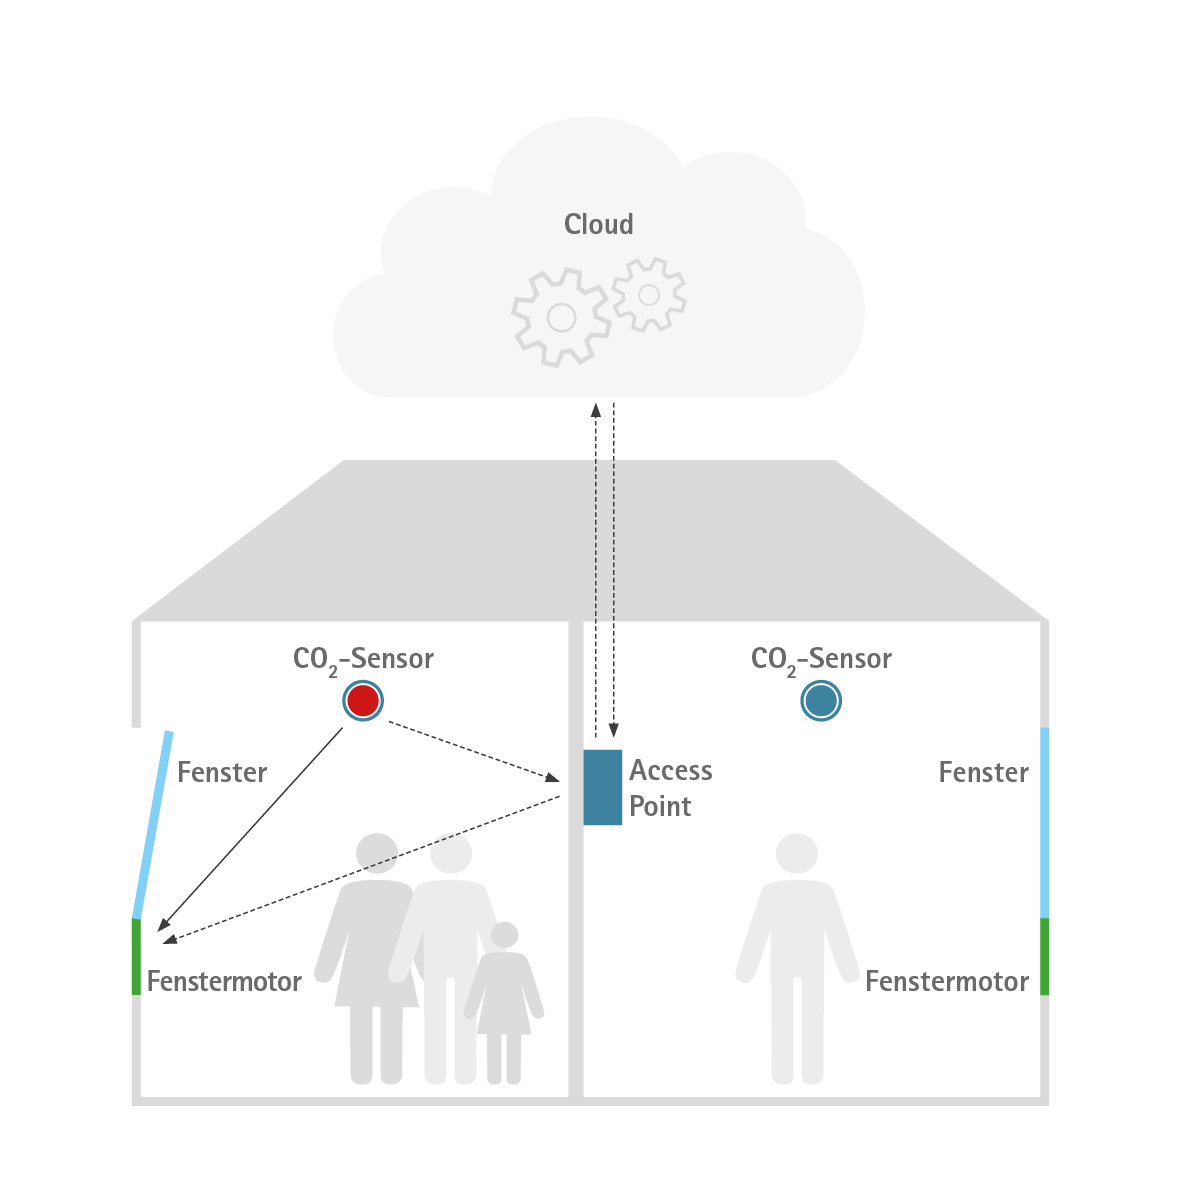 Exemple simple avec a) communication directe entre le capteur de CO2 et le moteur de fenêtre et b) flux de signaux via le point d'accès et le cloud